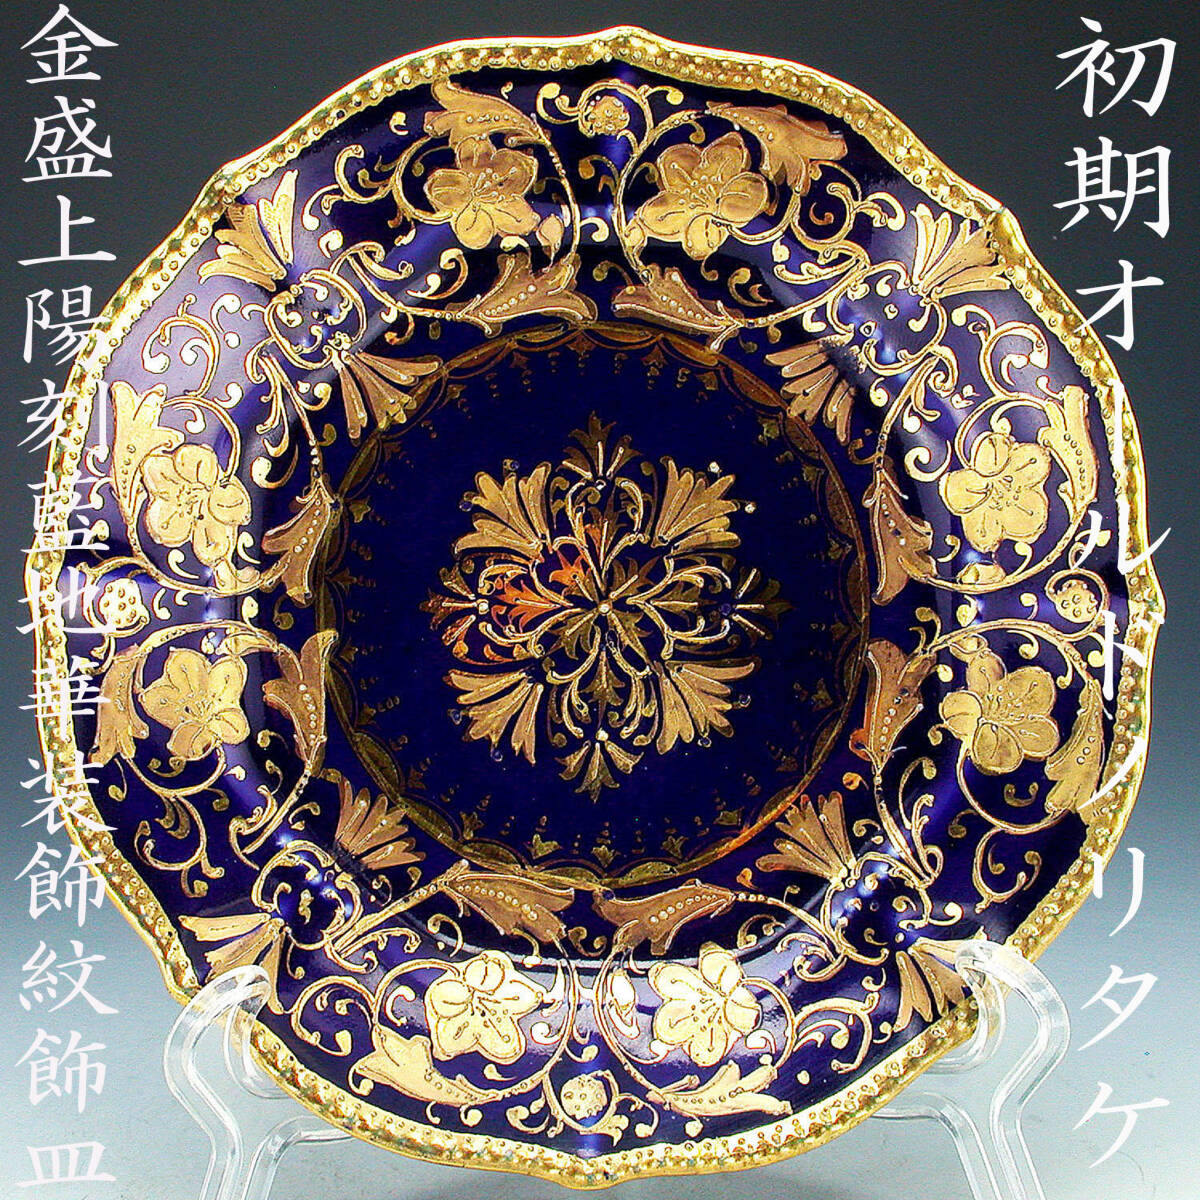 初期オールドノリタケ銘品!! オールドノリタケ・金盛上陽刻藍地華装飾紋飾皿の画像1